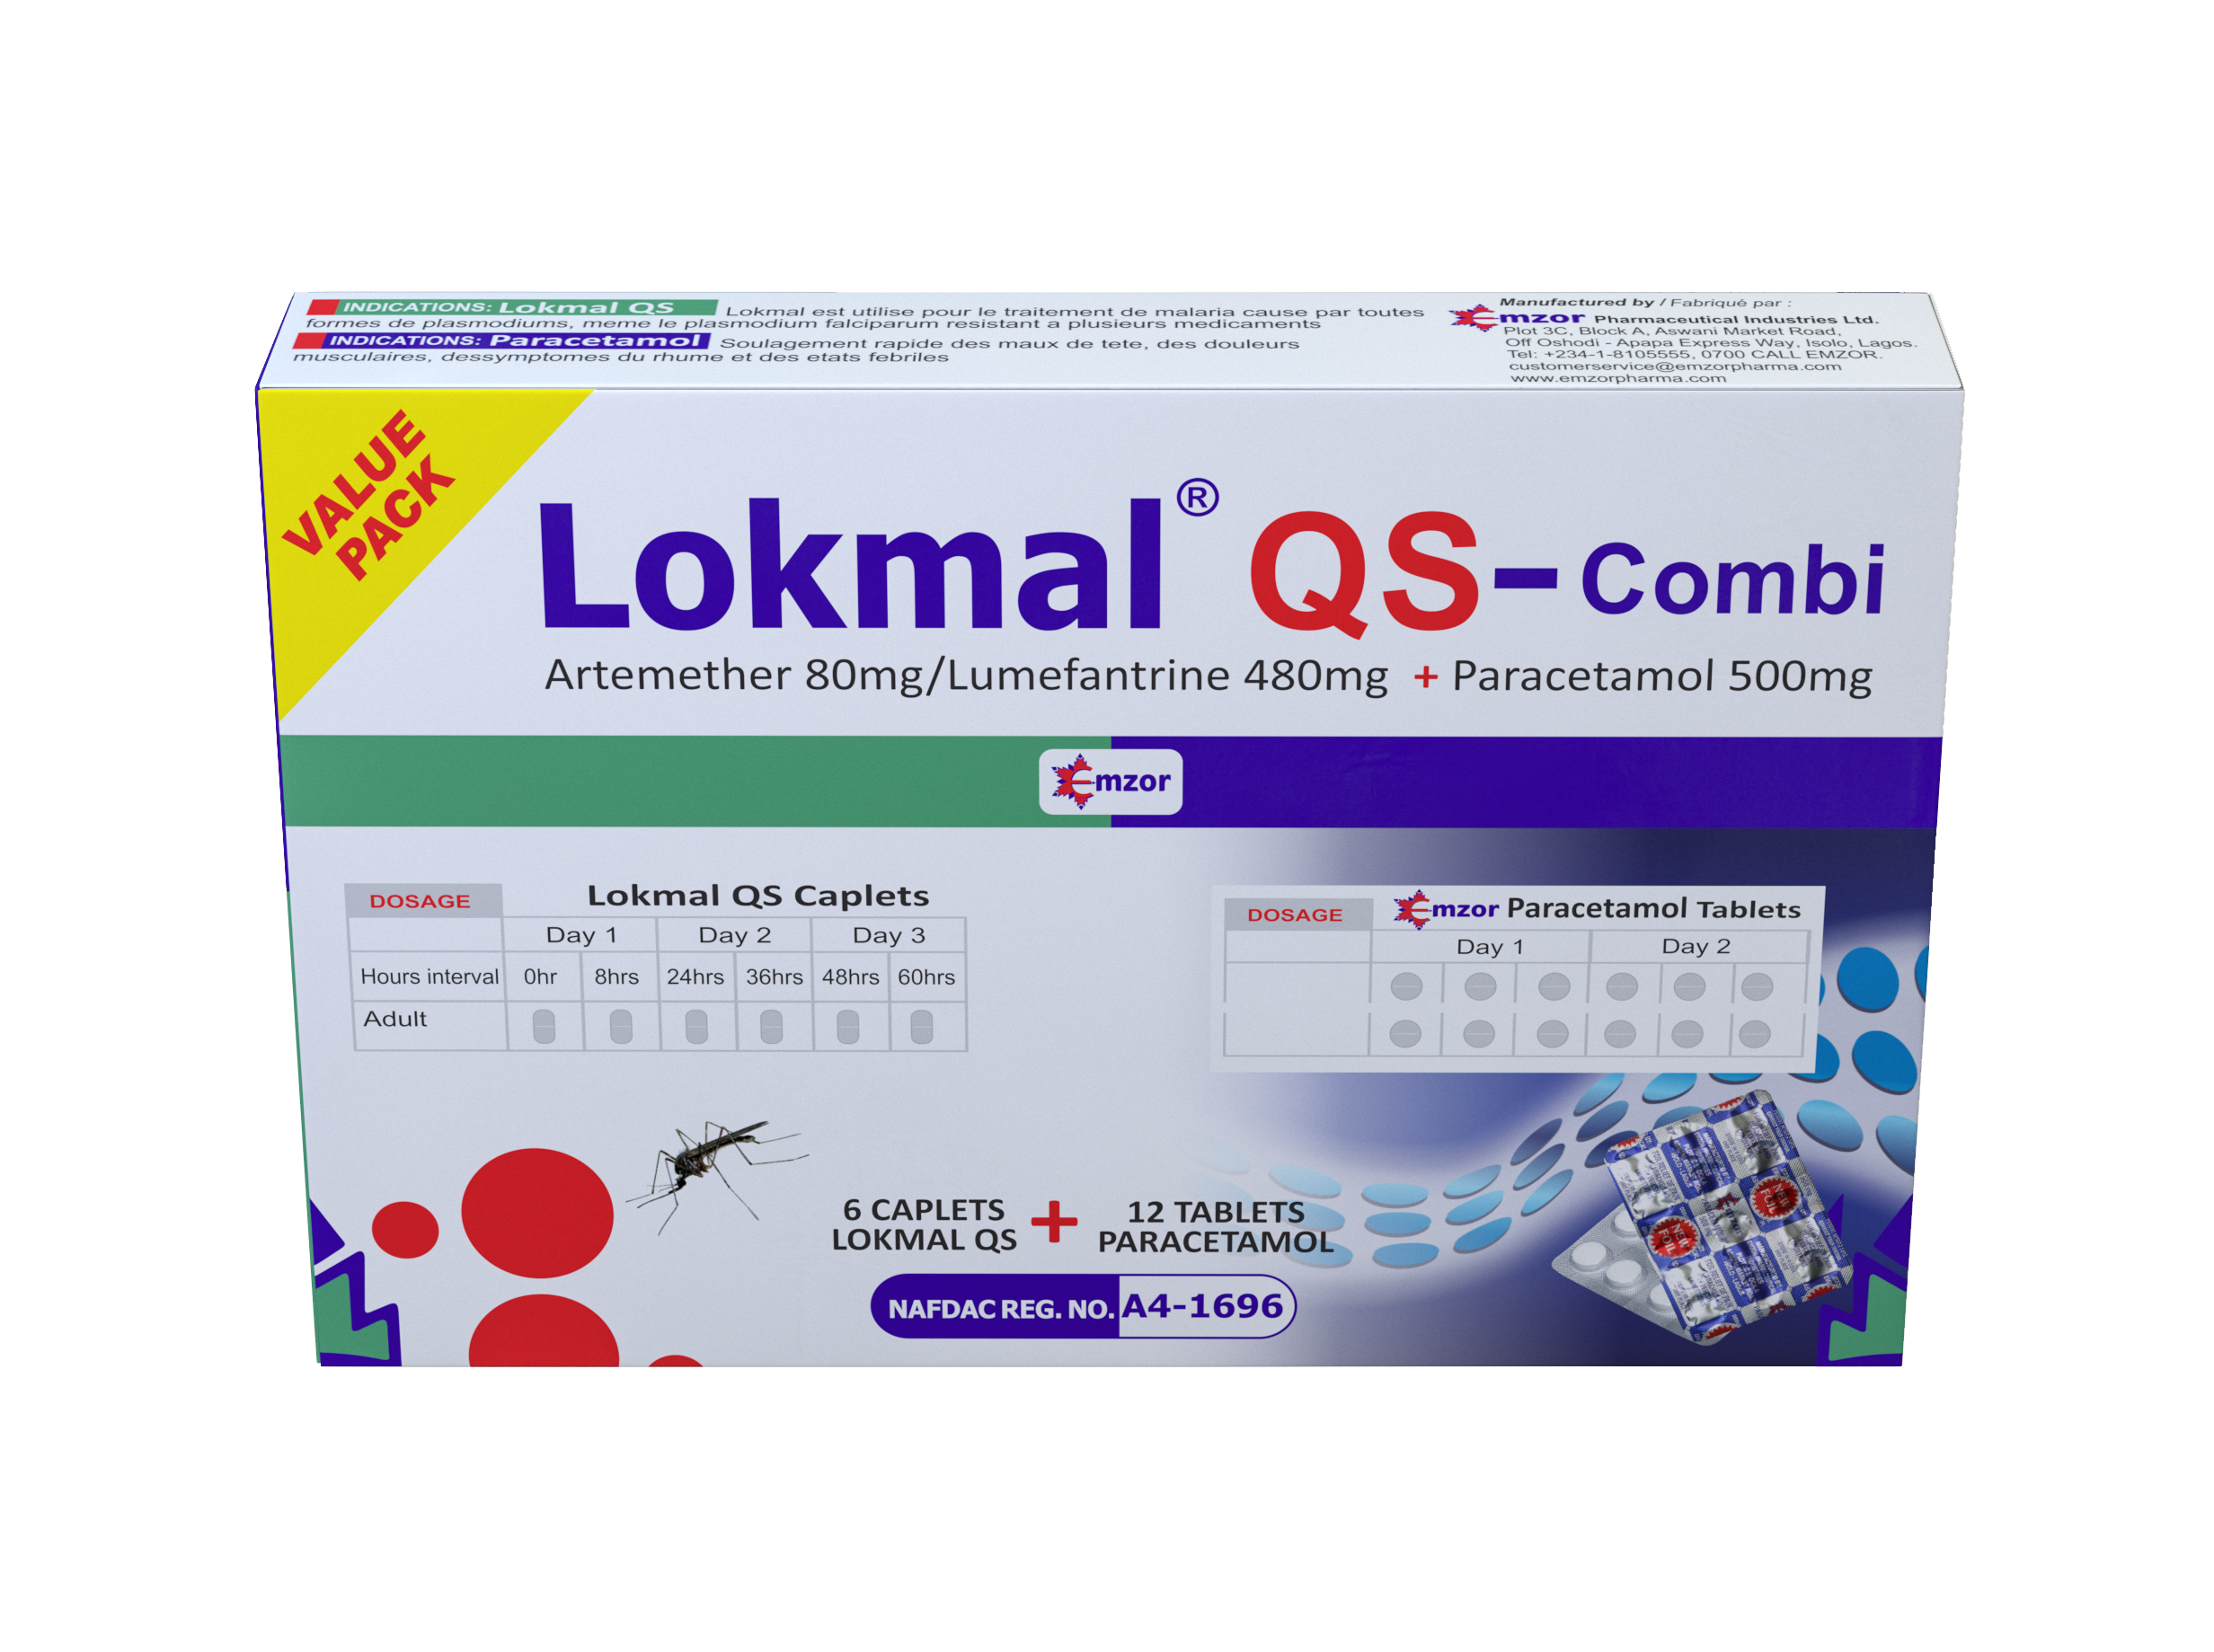 Lokmal QS-Combi main image